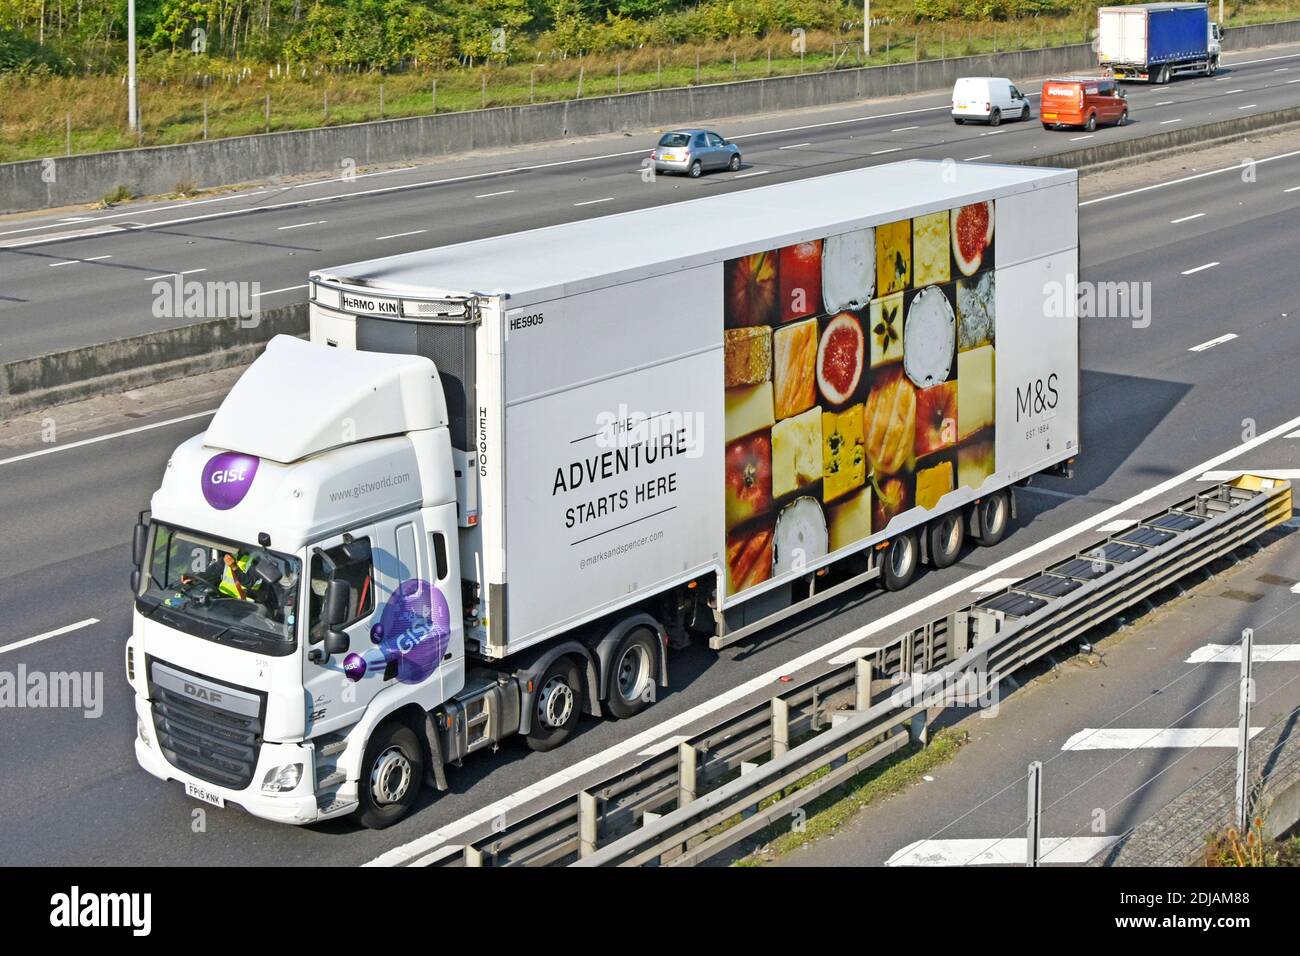 Vista laterale e anteriore camion e conducente con Consegna M&S da parte del settore alimentare al dettaglio rimorchio della catena di fornitura refrigerata Grafica pubblicitaria sull'autostrada del Regno Unito Foto Stock